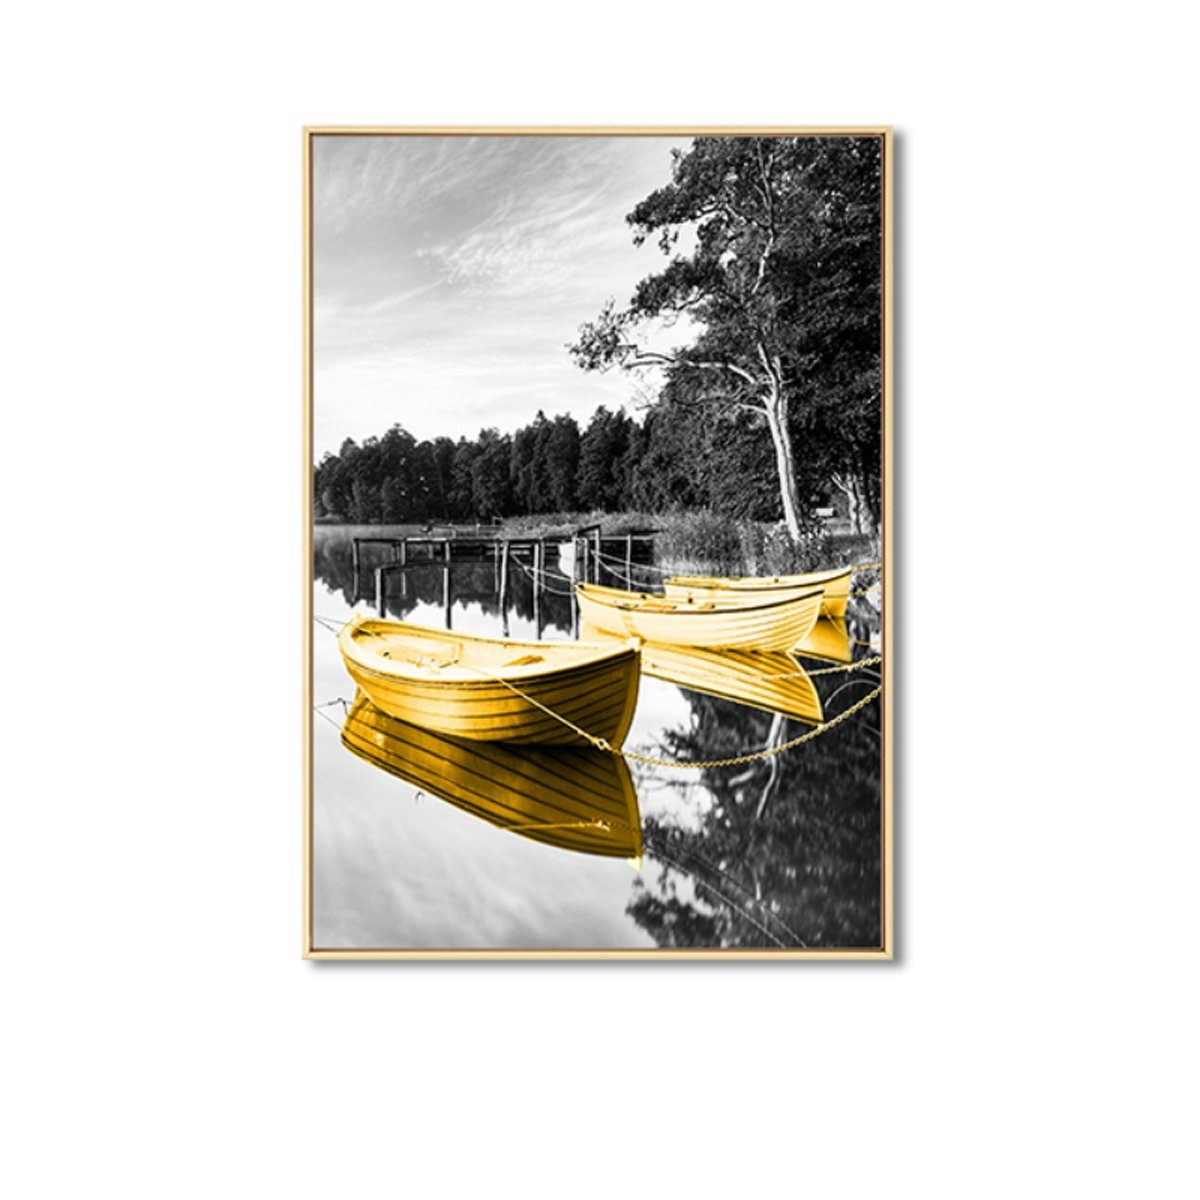 TPFLiving Kunstdruck (OHNE RAHMEN) Poster - Leinwand - Wandbild, Gelbe Boote auf grauem Hintergrund - Wanddeko Wohnzimmer - (7 verschiedene Größen zur Auswahl - Auch im günstigen 3-er Set), Farben: Gelb, Grau - Größe: 13x18cm